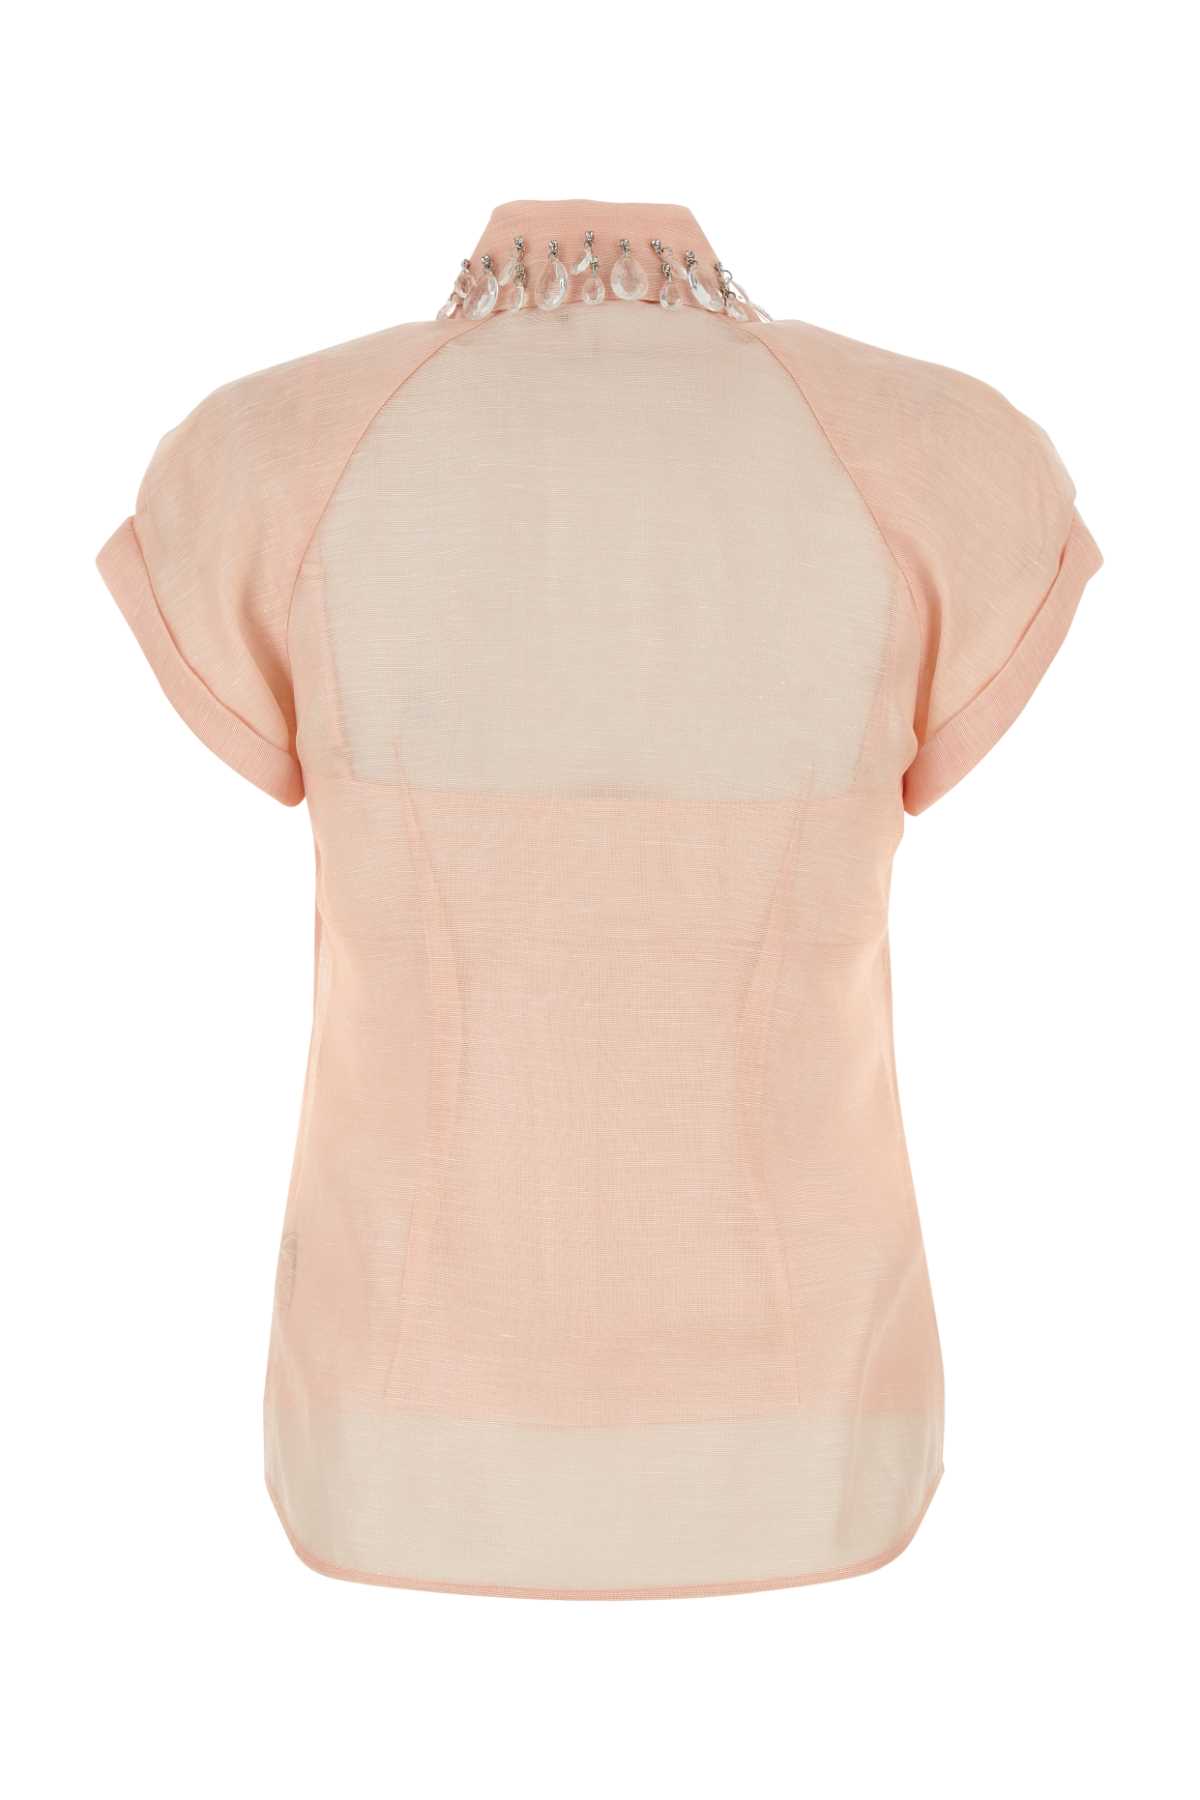 Zimmermann Pink Linen Blend Matchmaker Shirt